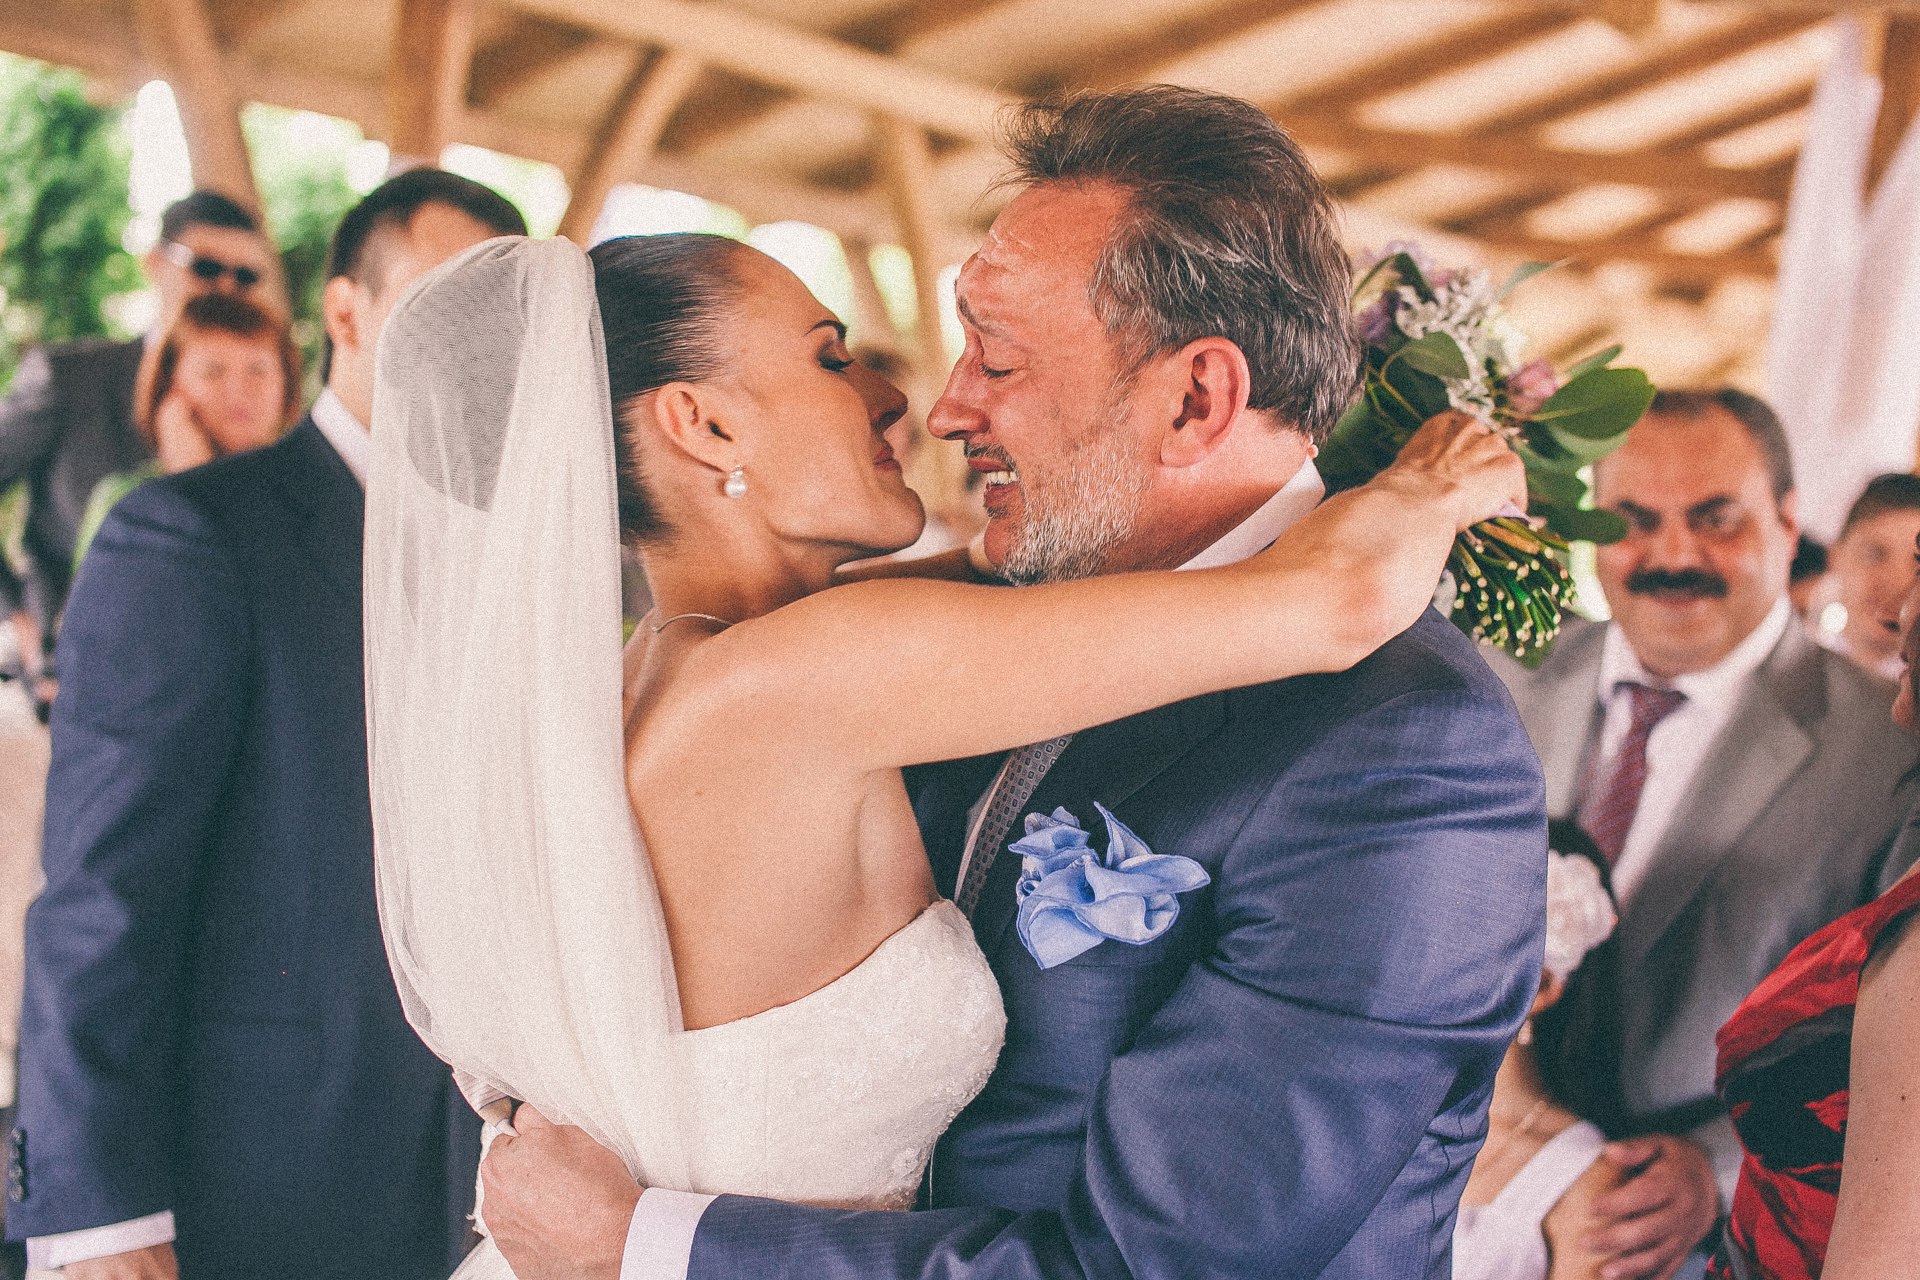 Олег и Дария Минины на свадебной церемонии. На втором плане справа отец жениха Алексей Веллер. Фото © VK / Дария Веллер (Минина)